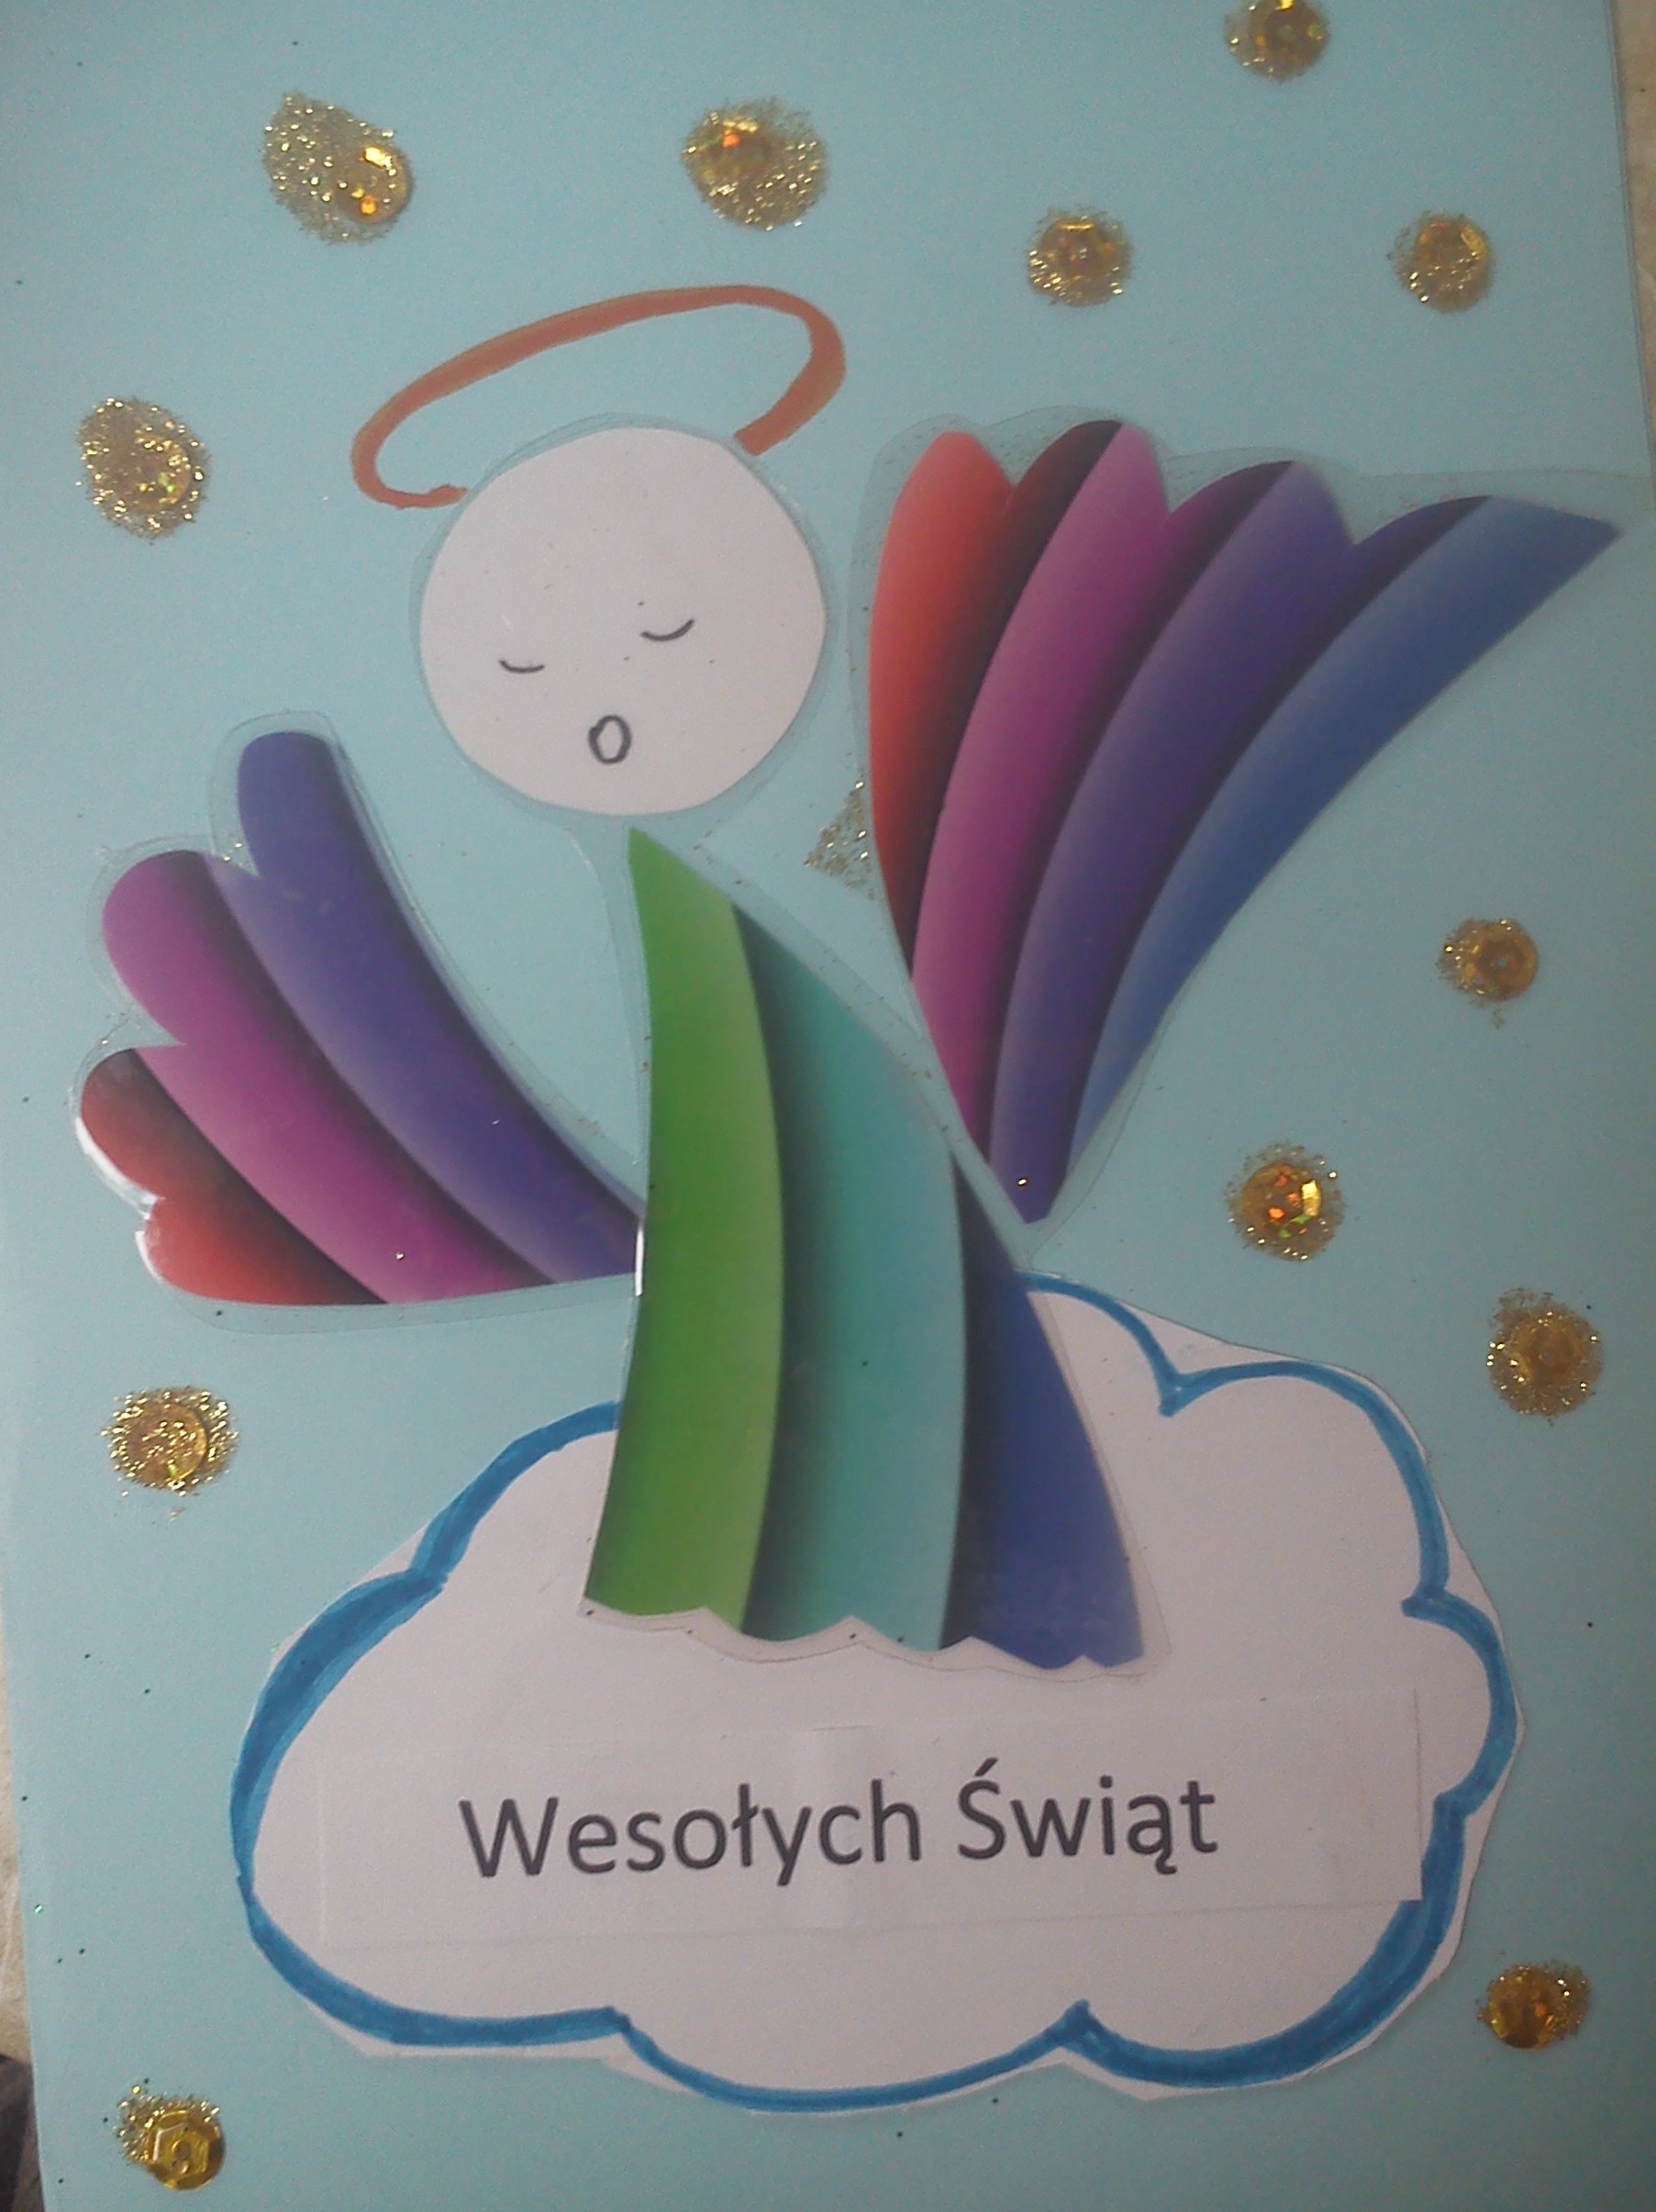 Exposition de cartes postales festives faites main par des enfants de Pologne (Mazury).